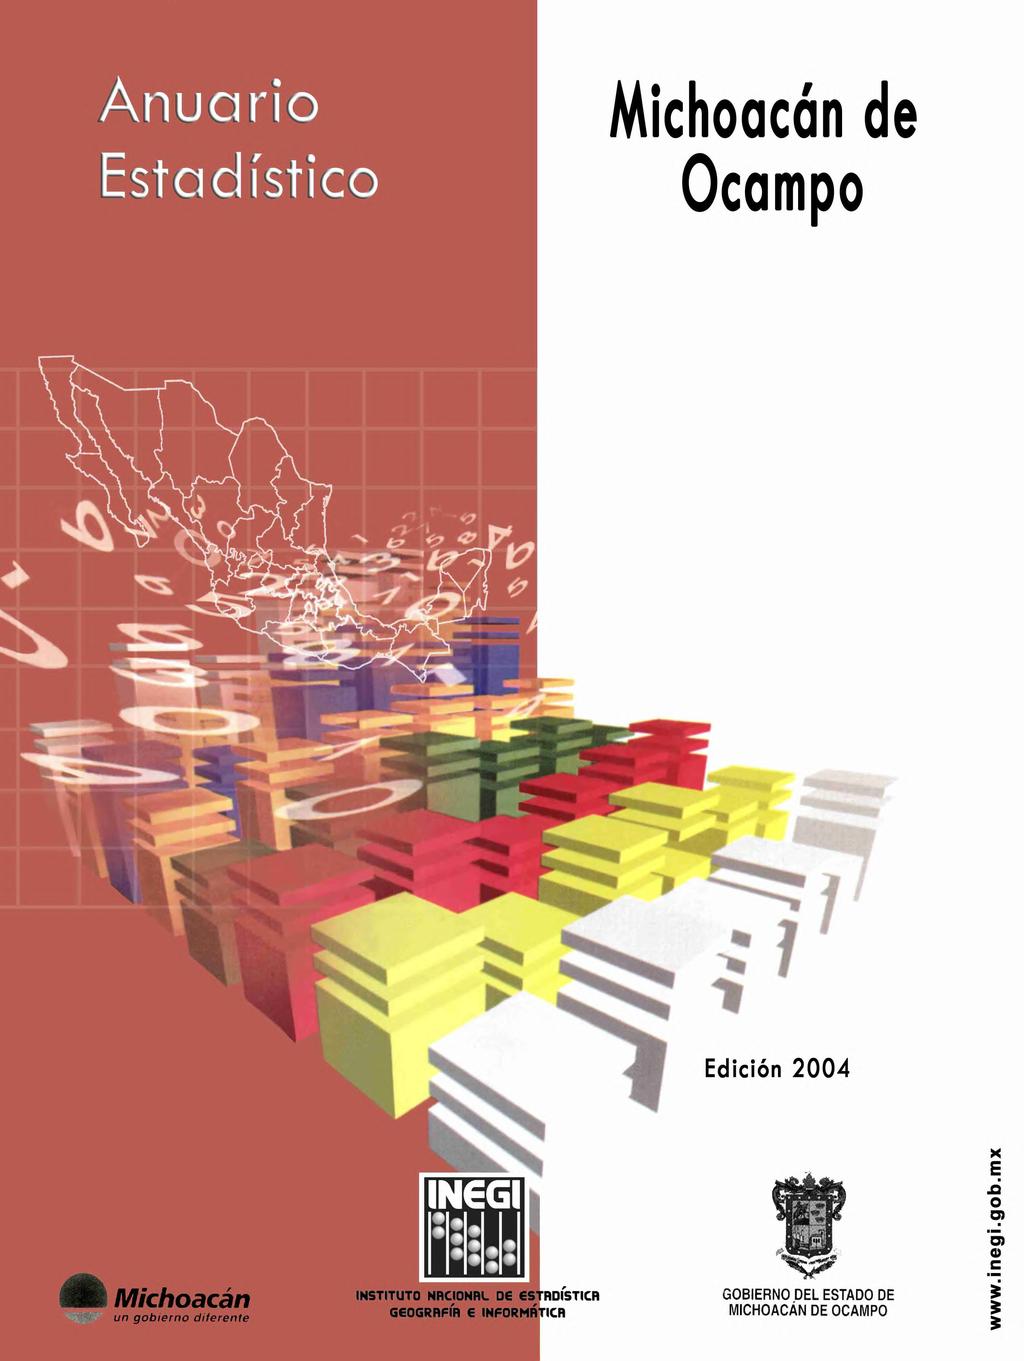 Anuario Michoacán de Estadístico Ocampo Edición 24 x E A O O) m c Michoacán un gobierno diferente